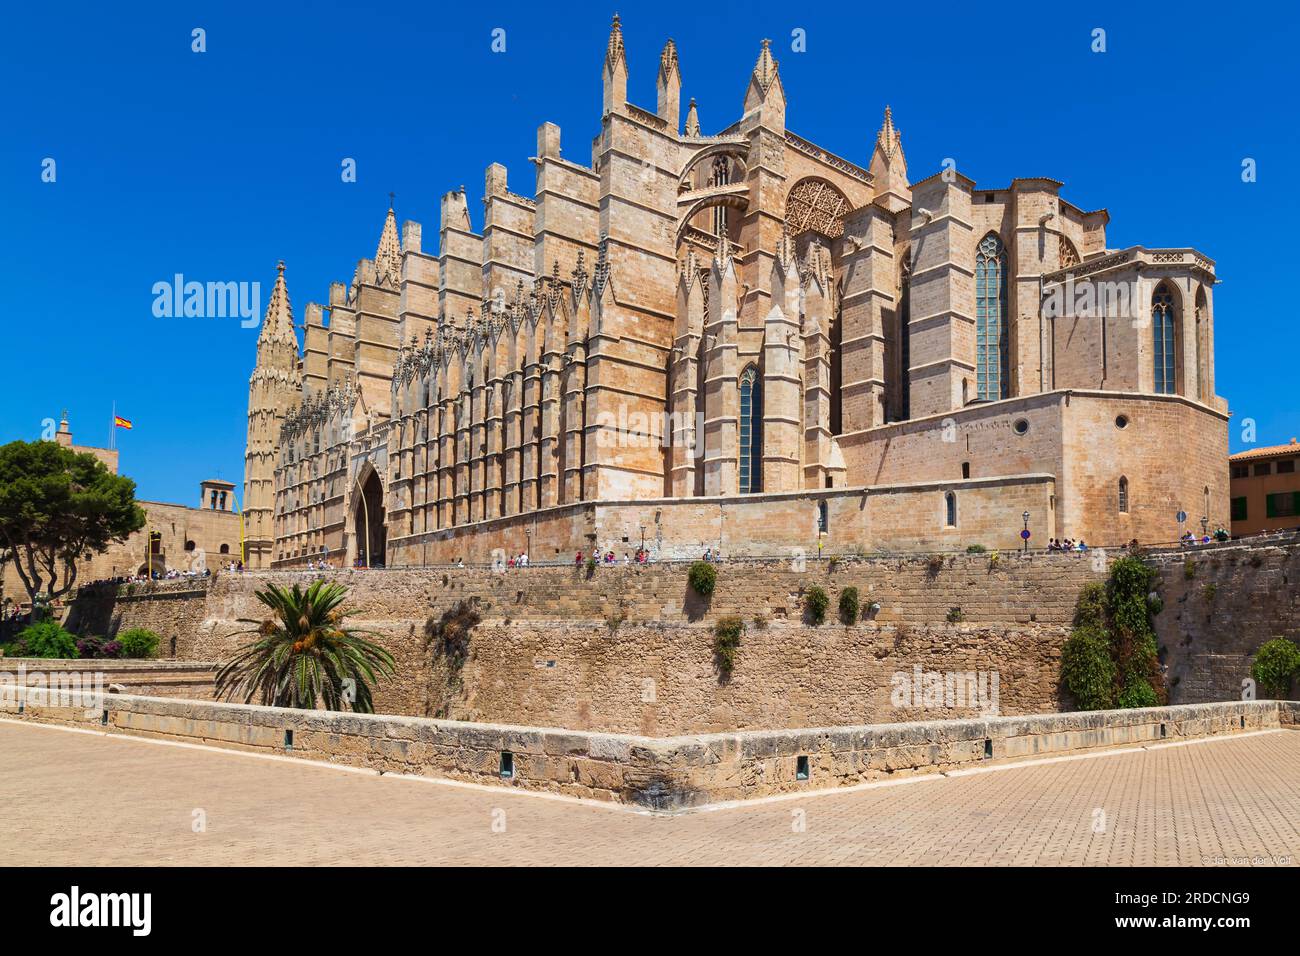 Kathedrale Santa Maria von Palma im historischen Zentrum von Palma de Mallorca in Spanien. Stockfoto